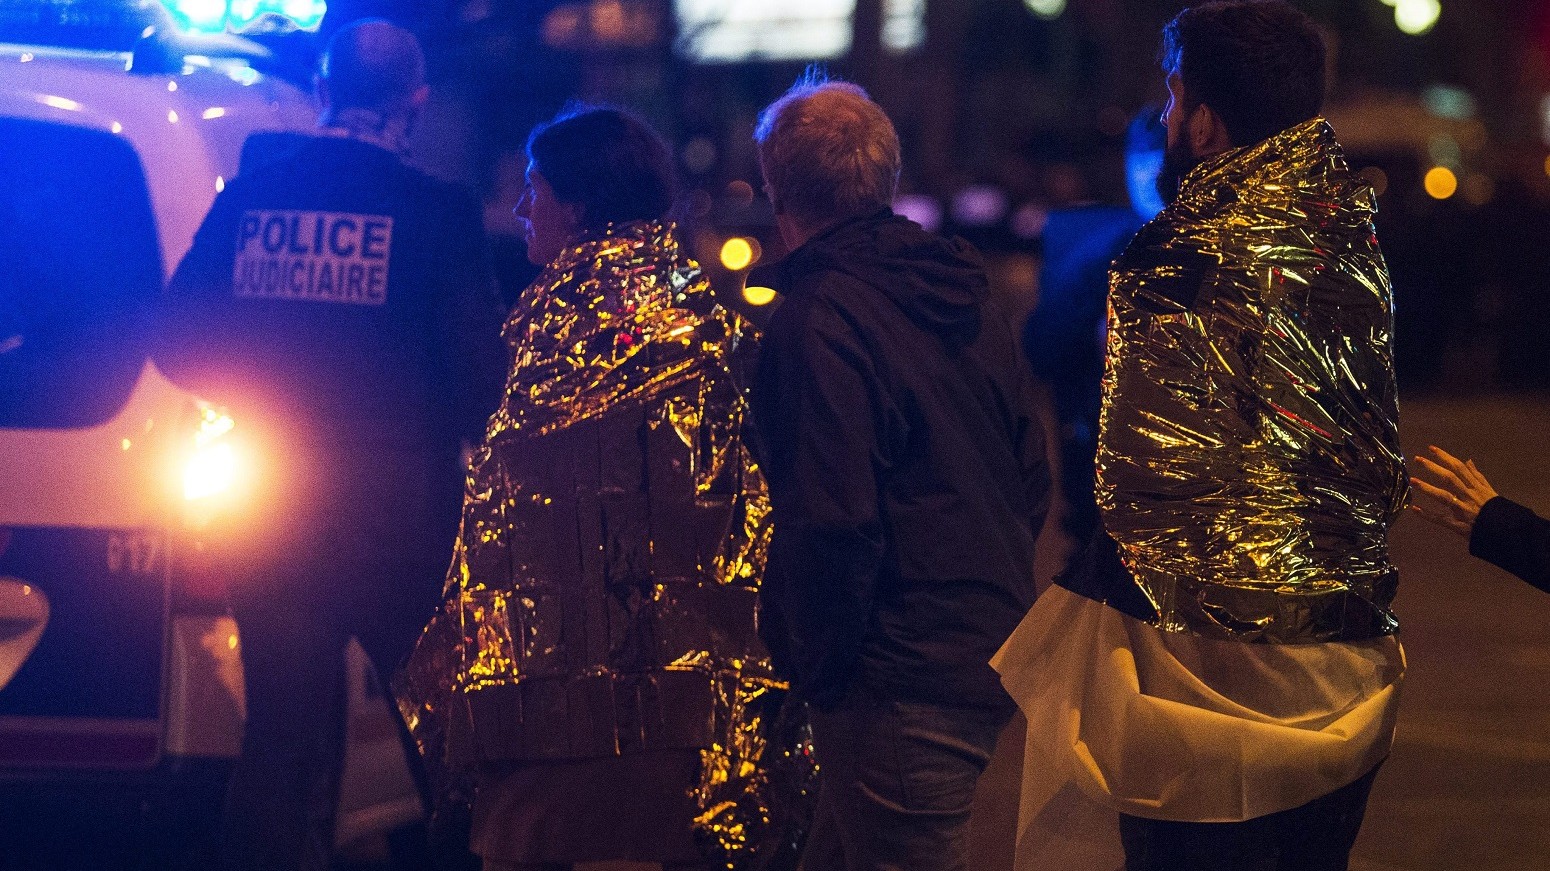 Párizs, 2015. november 14. Rendõrök menekítik ki az embereket a párizsi Bataclan koncertterembõl 2015. november 13-án. A francia fõvárosban késõ este összehangoltan több merényletet követtek el. A lövöldözésekben és robbanásokban legalább 140 ember meghalt, sokan megsebesültek. Francois Hollande francia elnök egész Franciaország területére rendkívüli állapotot hirdetett és bejelentette a határok lezárását. (MTI/EPA/Etienne Laurent)